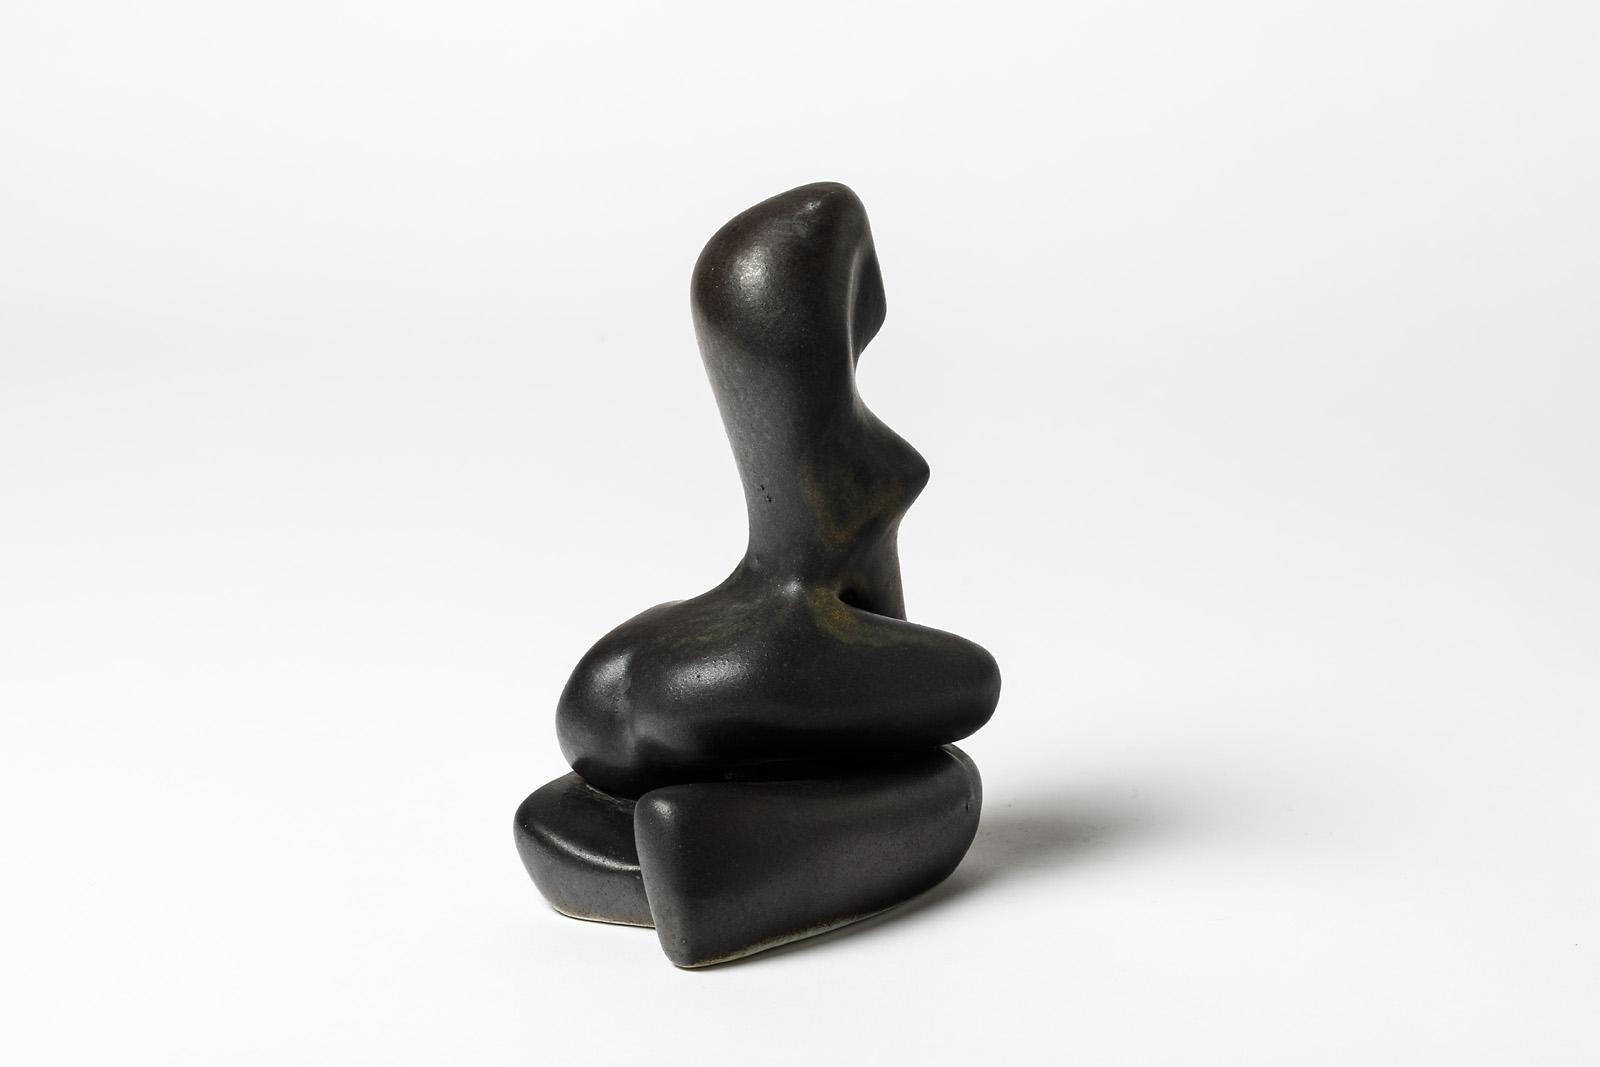 Une sculpture en porcelaine avec une décoration en glaçure noire par Tim Orr.
Conditions d'origine parfaites.
Signé sous la base,
vers 1970.